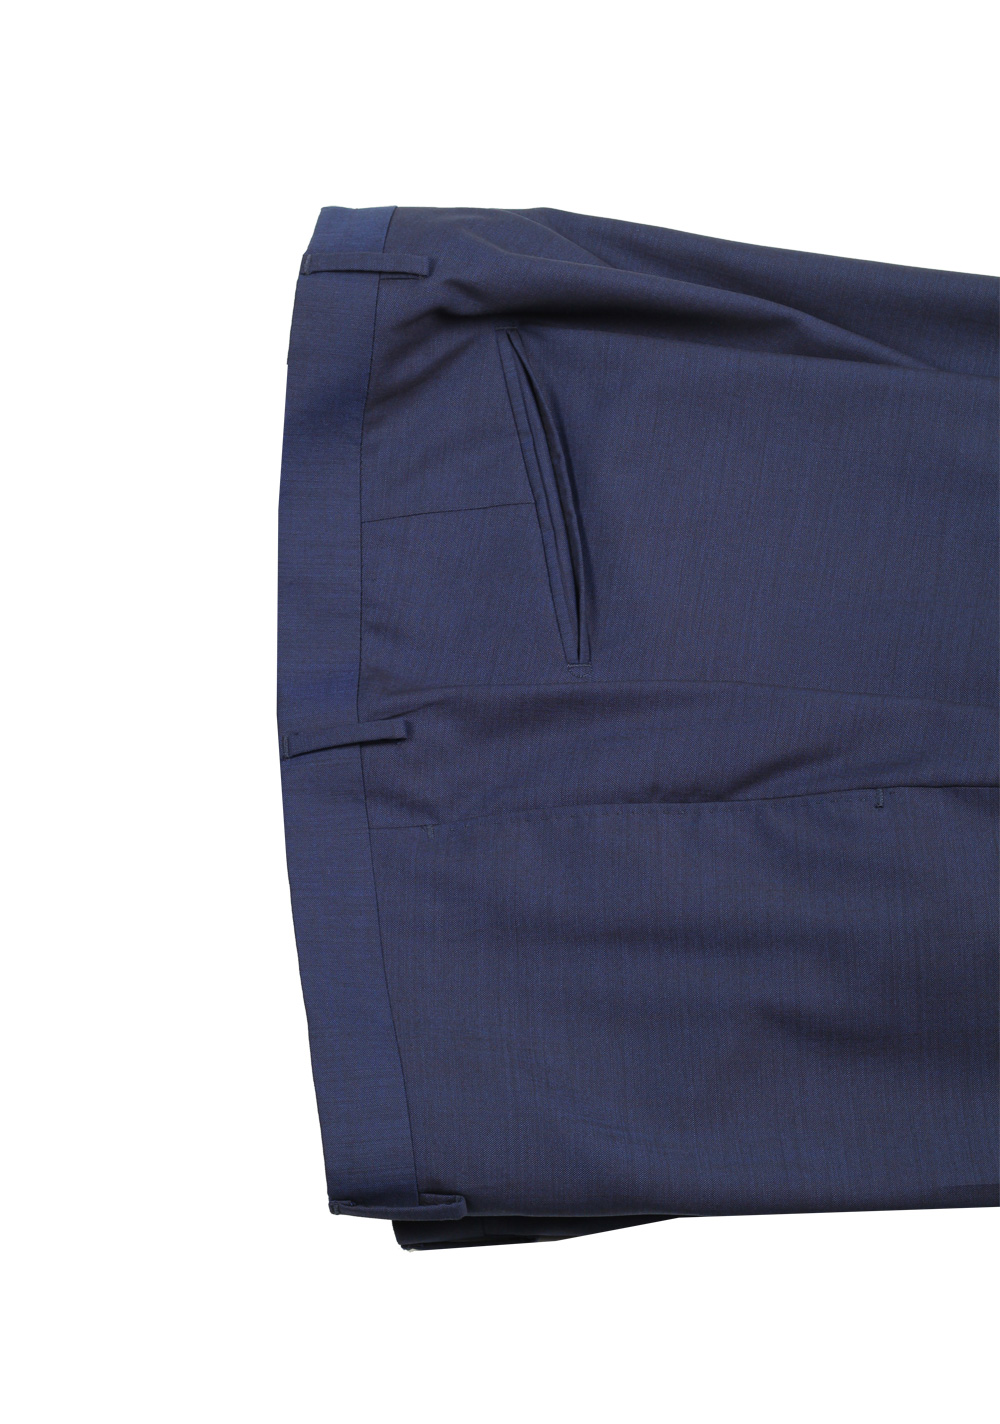 Boglioli Forza 52 Blue Suit Size 56 / 46R U.S. | Costume Limité